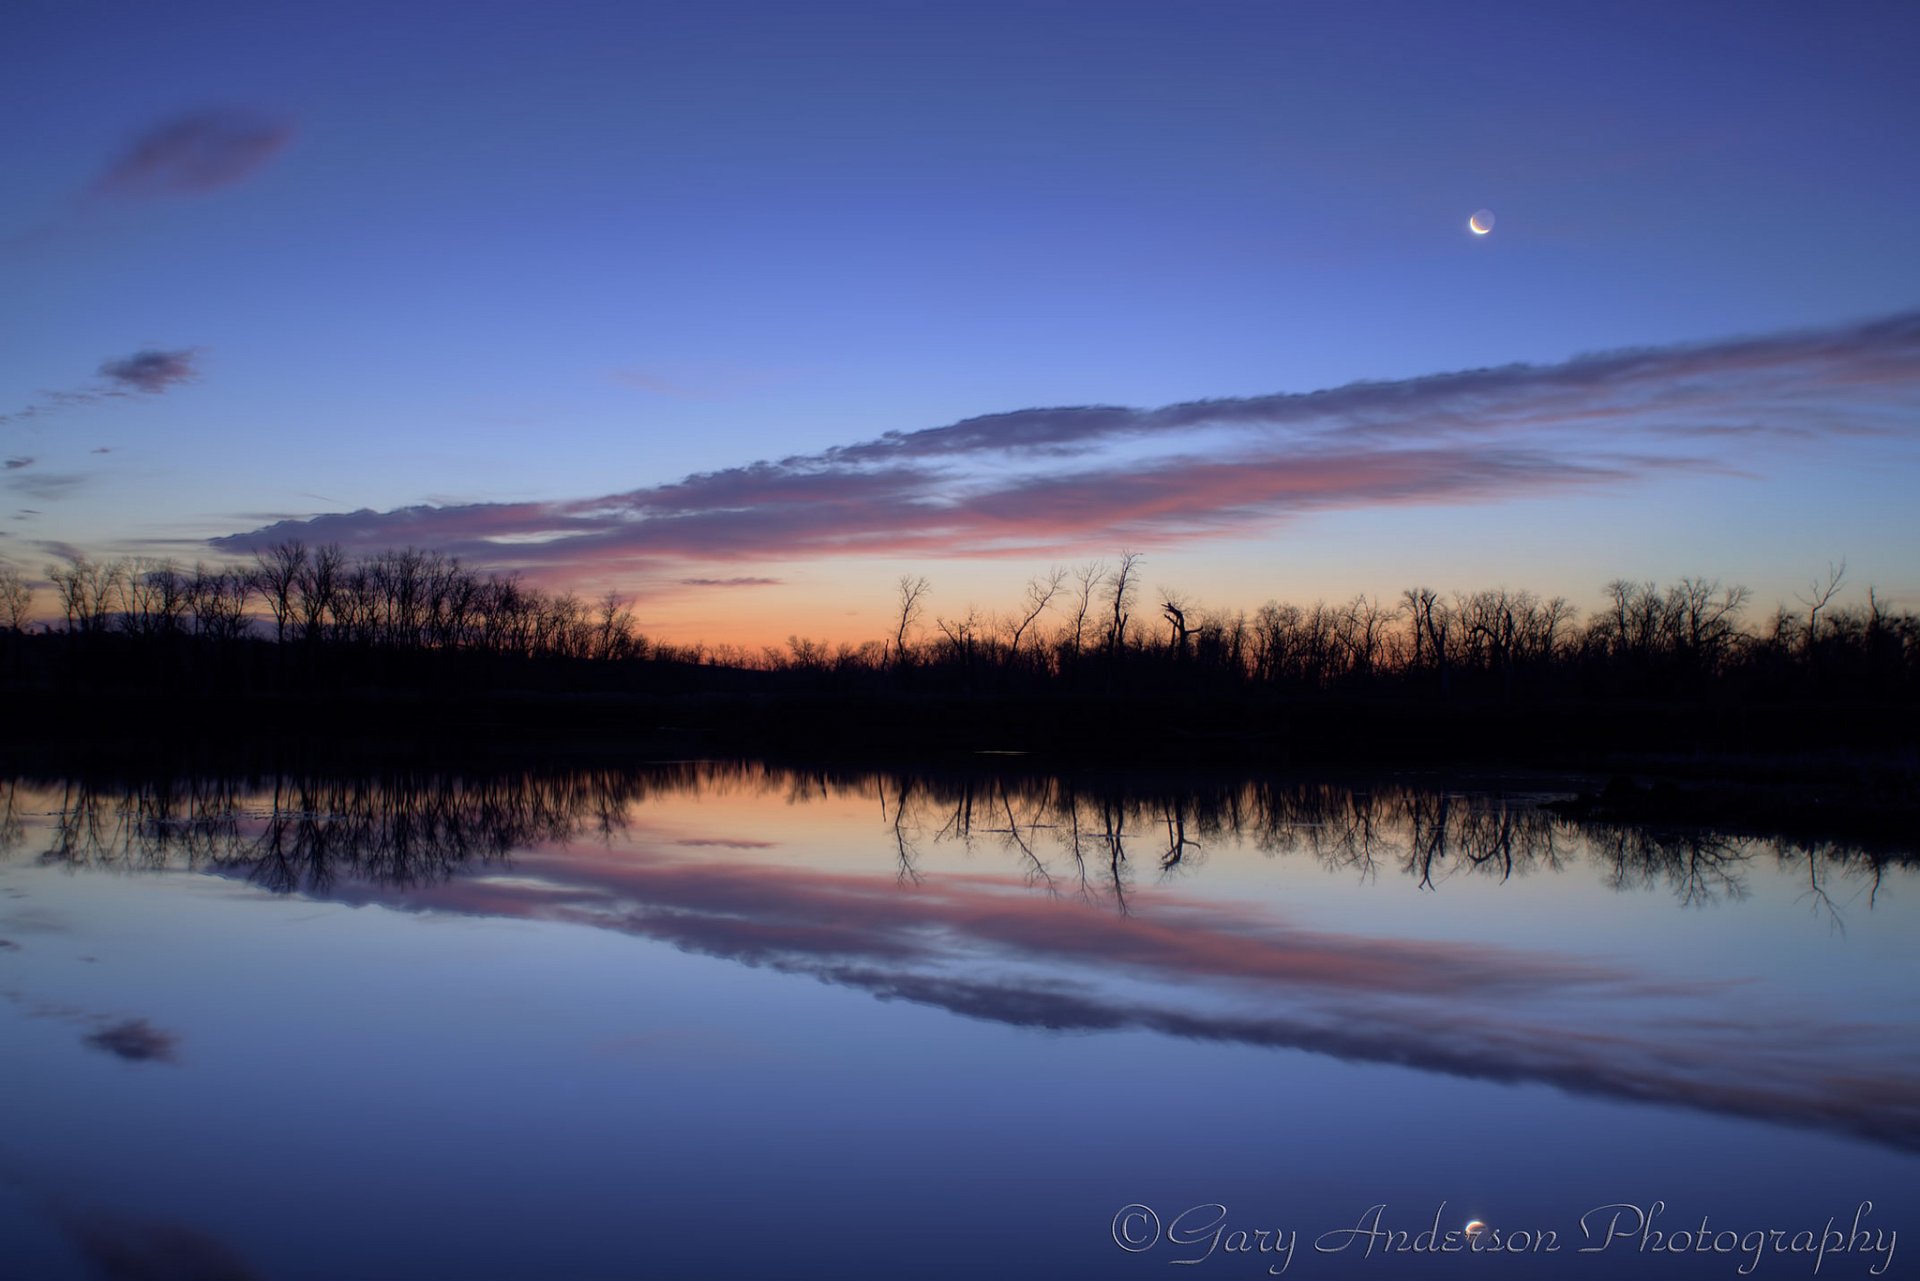 река вода гладь берег деревья отражение синее оранжевое небо облака месяц луна перед рассветом